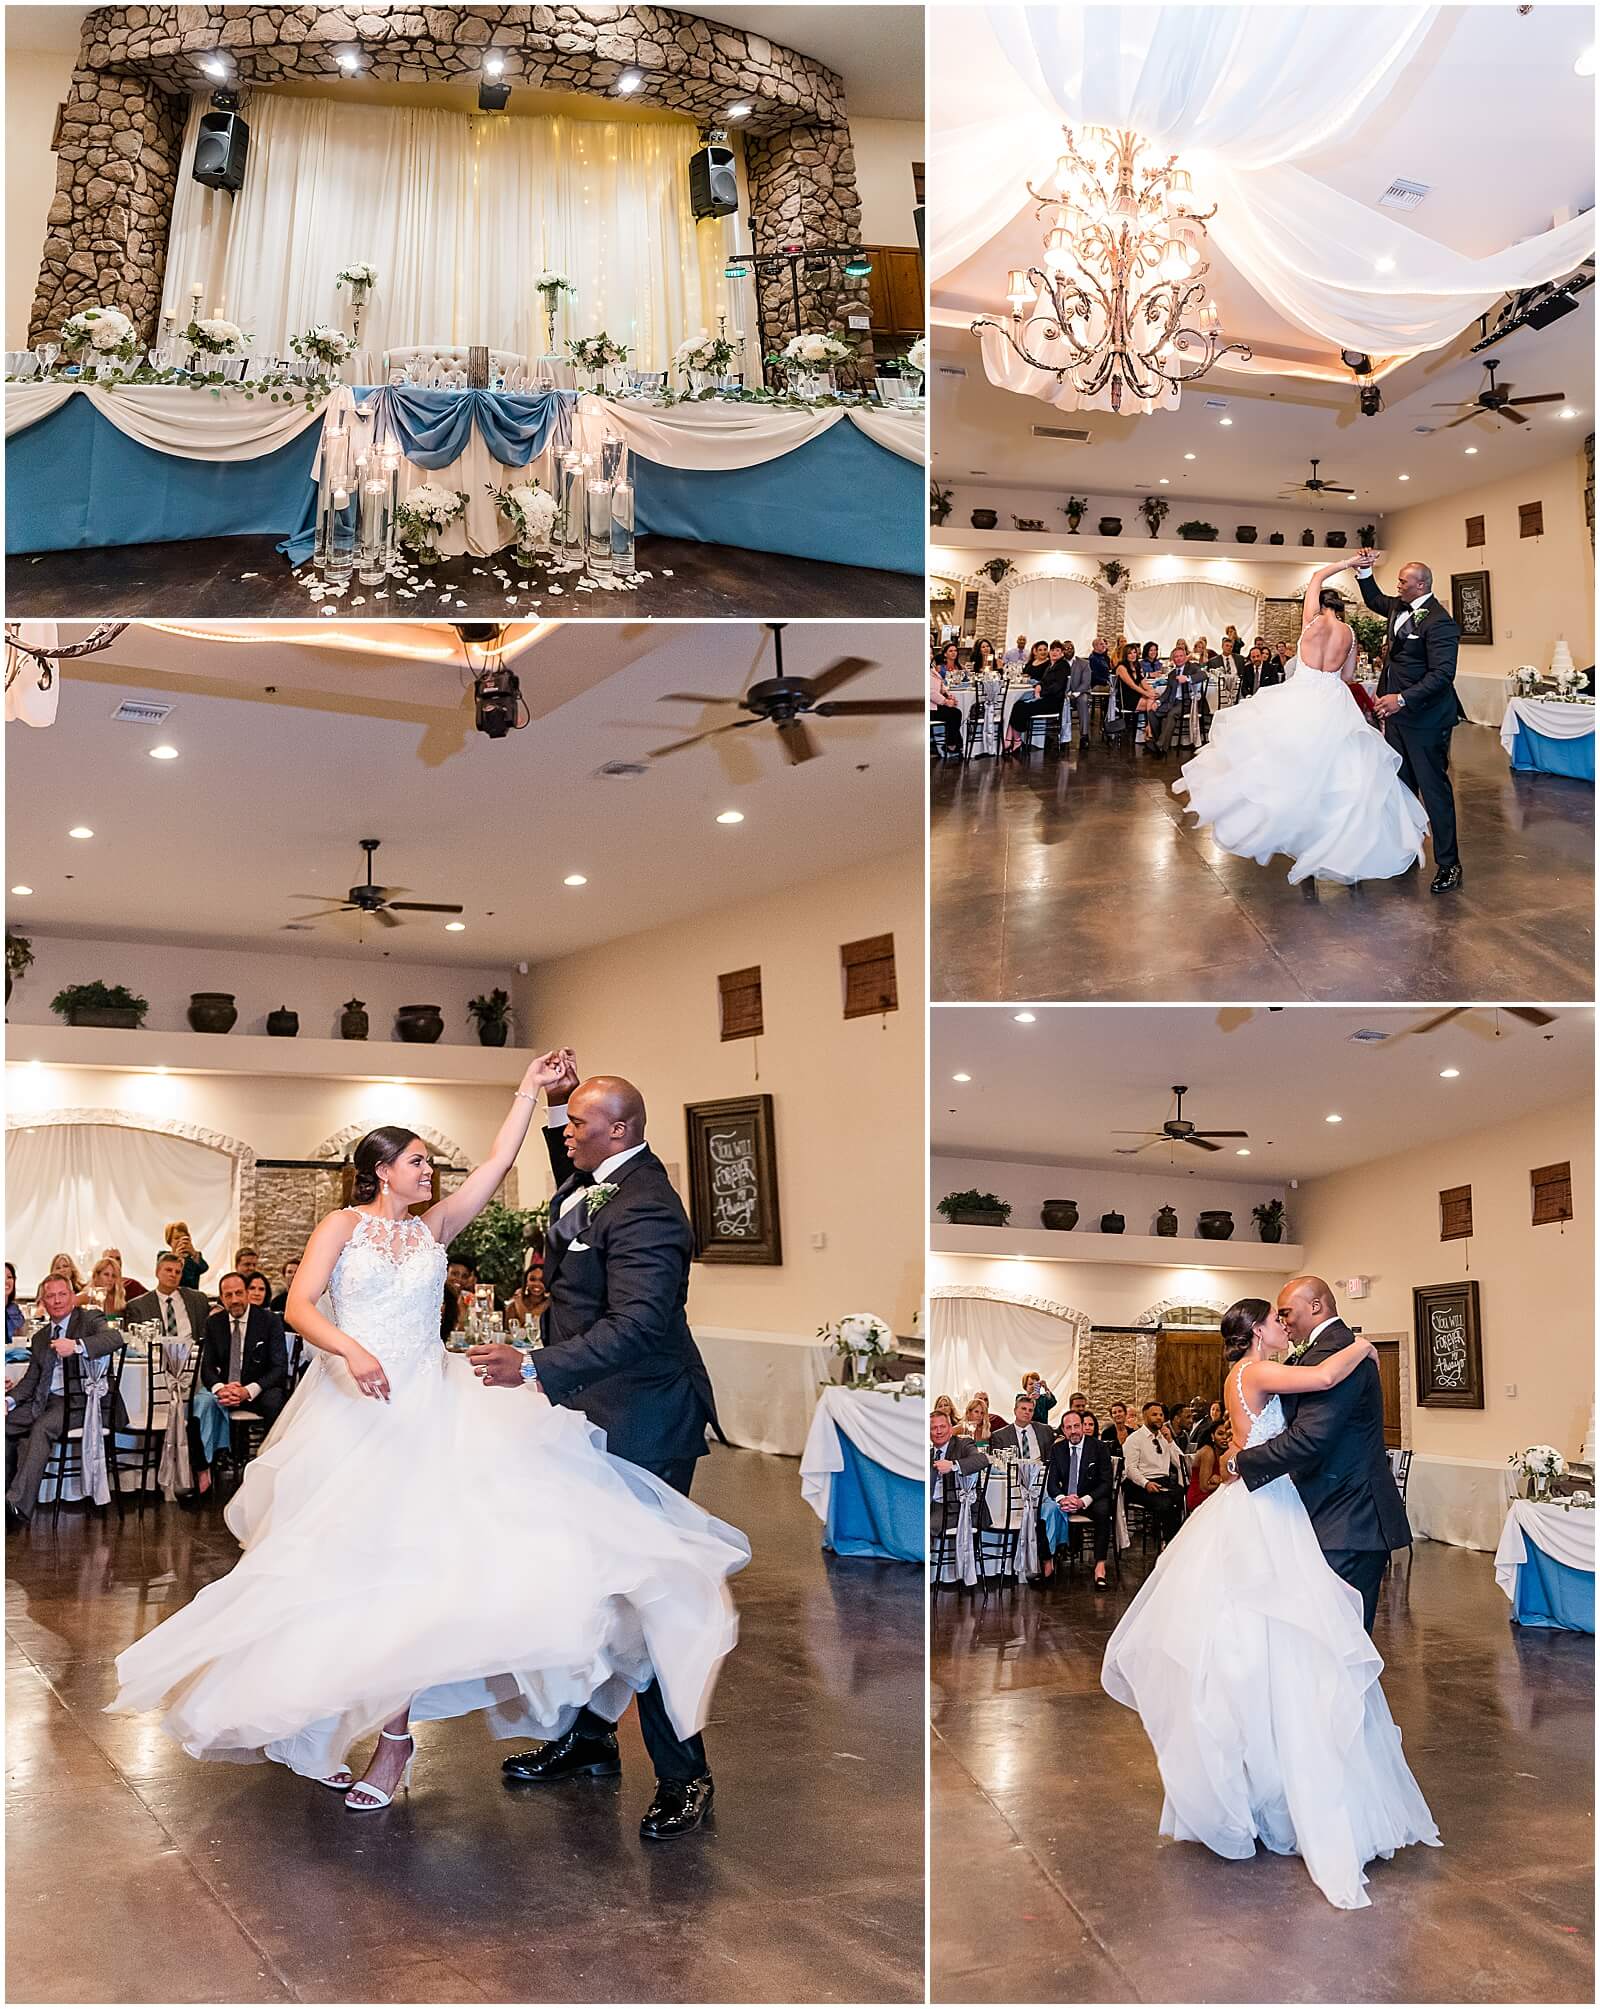 Wedding Day Timeline, Wedding Reception, Wedding Dancing, Beautiful Wedding Dress